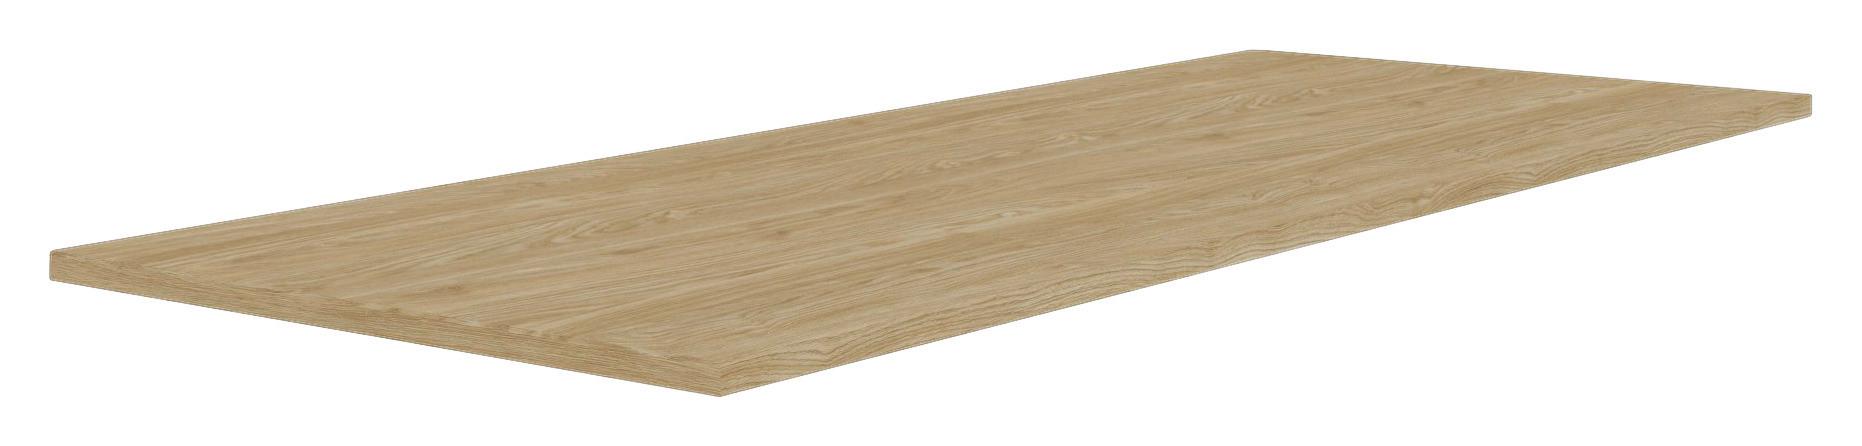 Vrchní Deska Unit-Elements - barvy dubu, Moderní, kompozitní dřevo (137/42/1,6cm) - Ondega